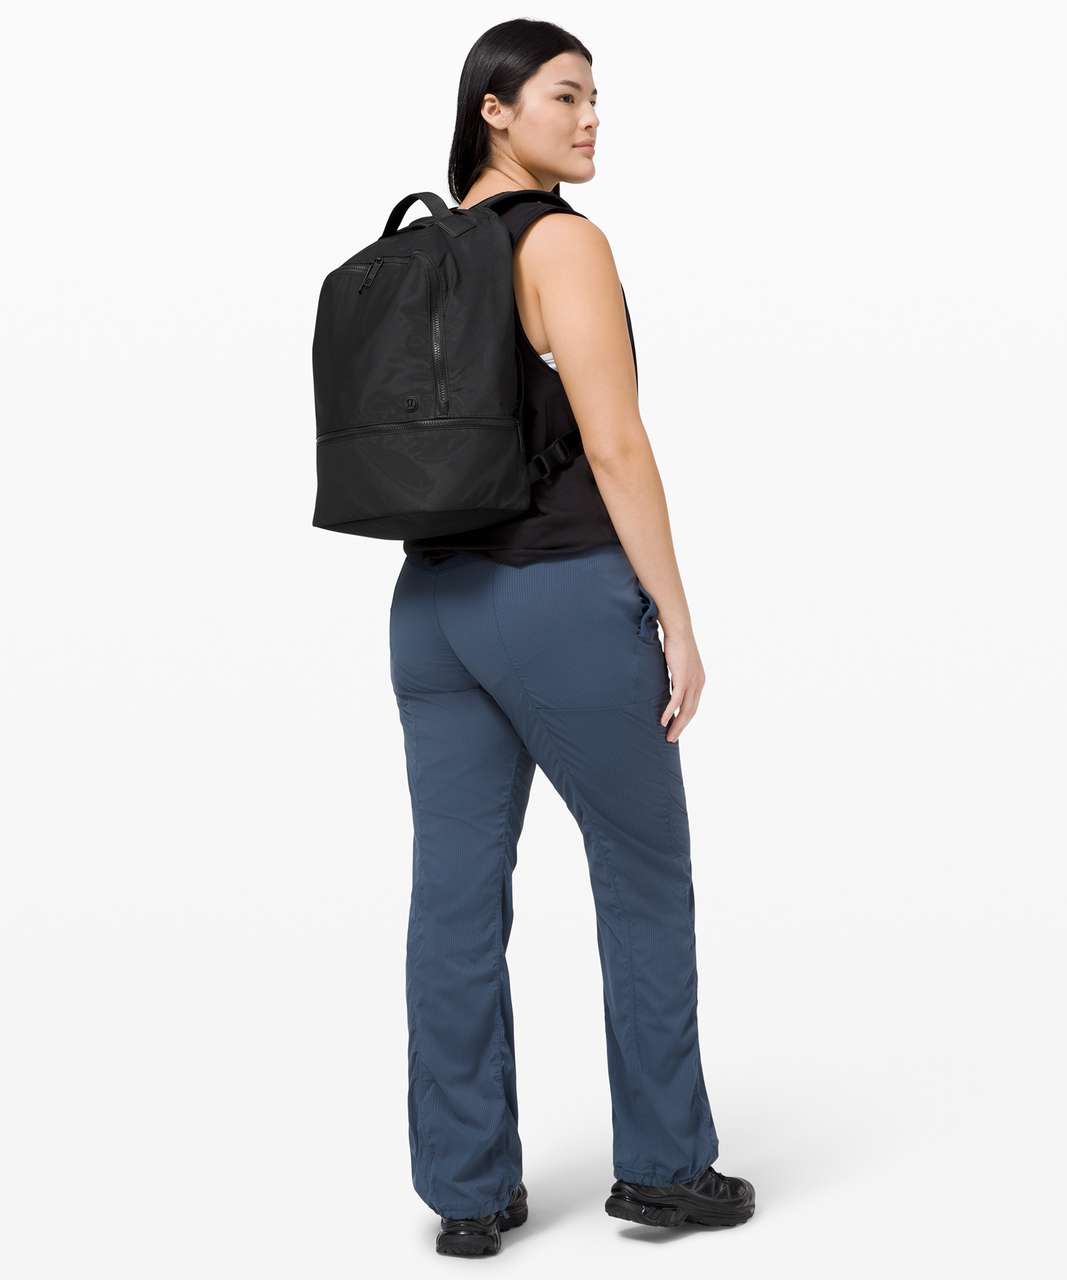 Lululemon City Adventurer Backpack 17L - ShopStyle